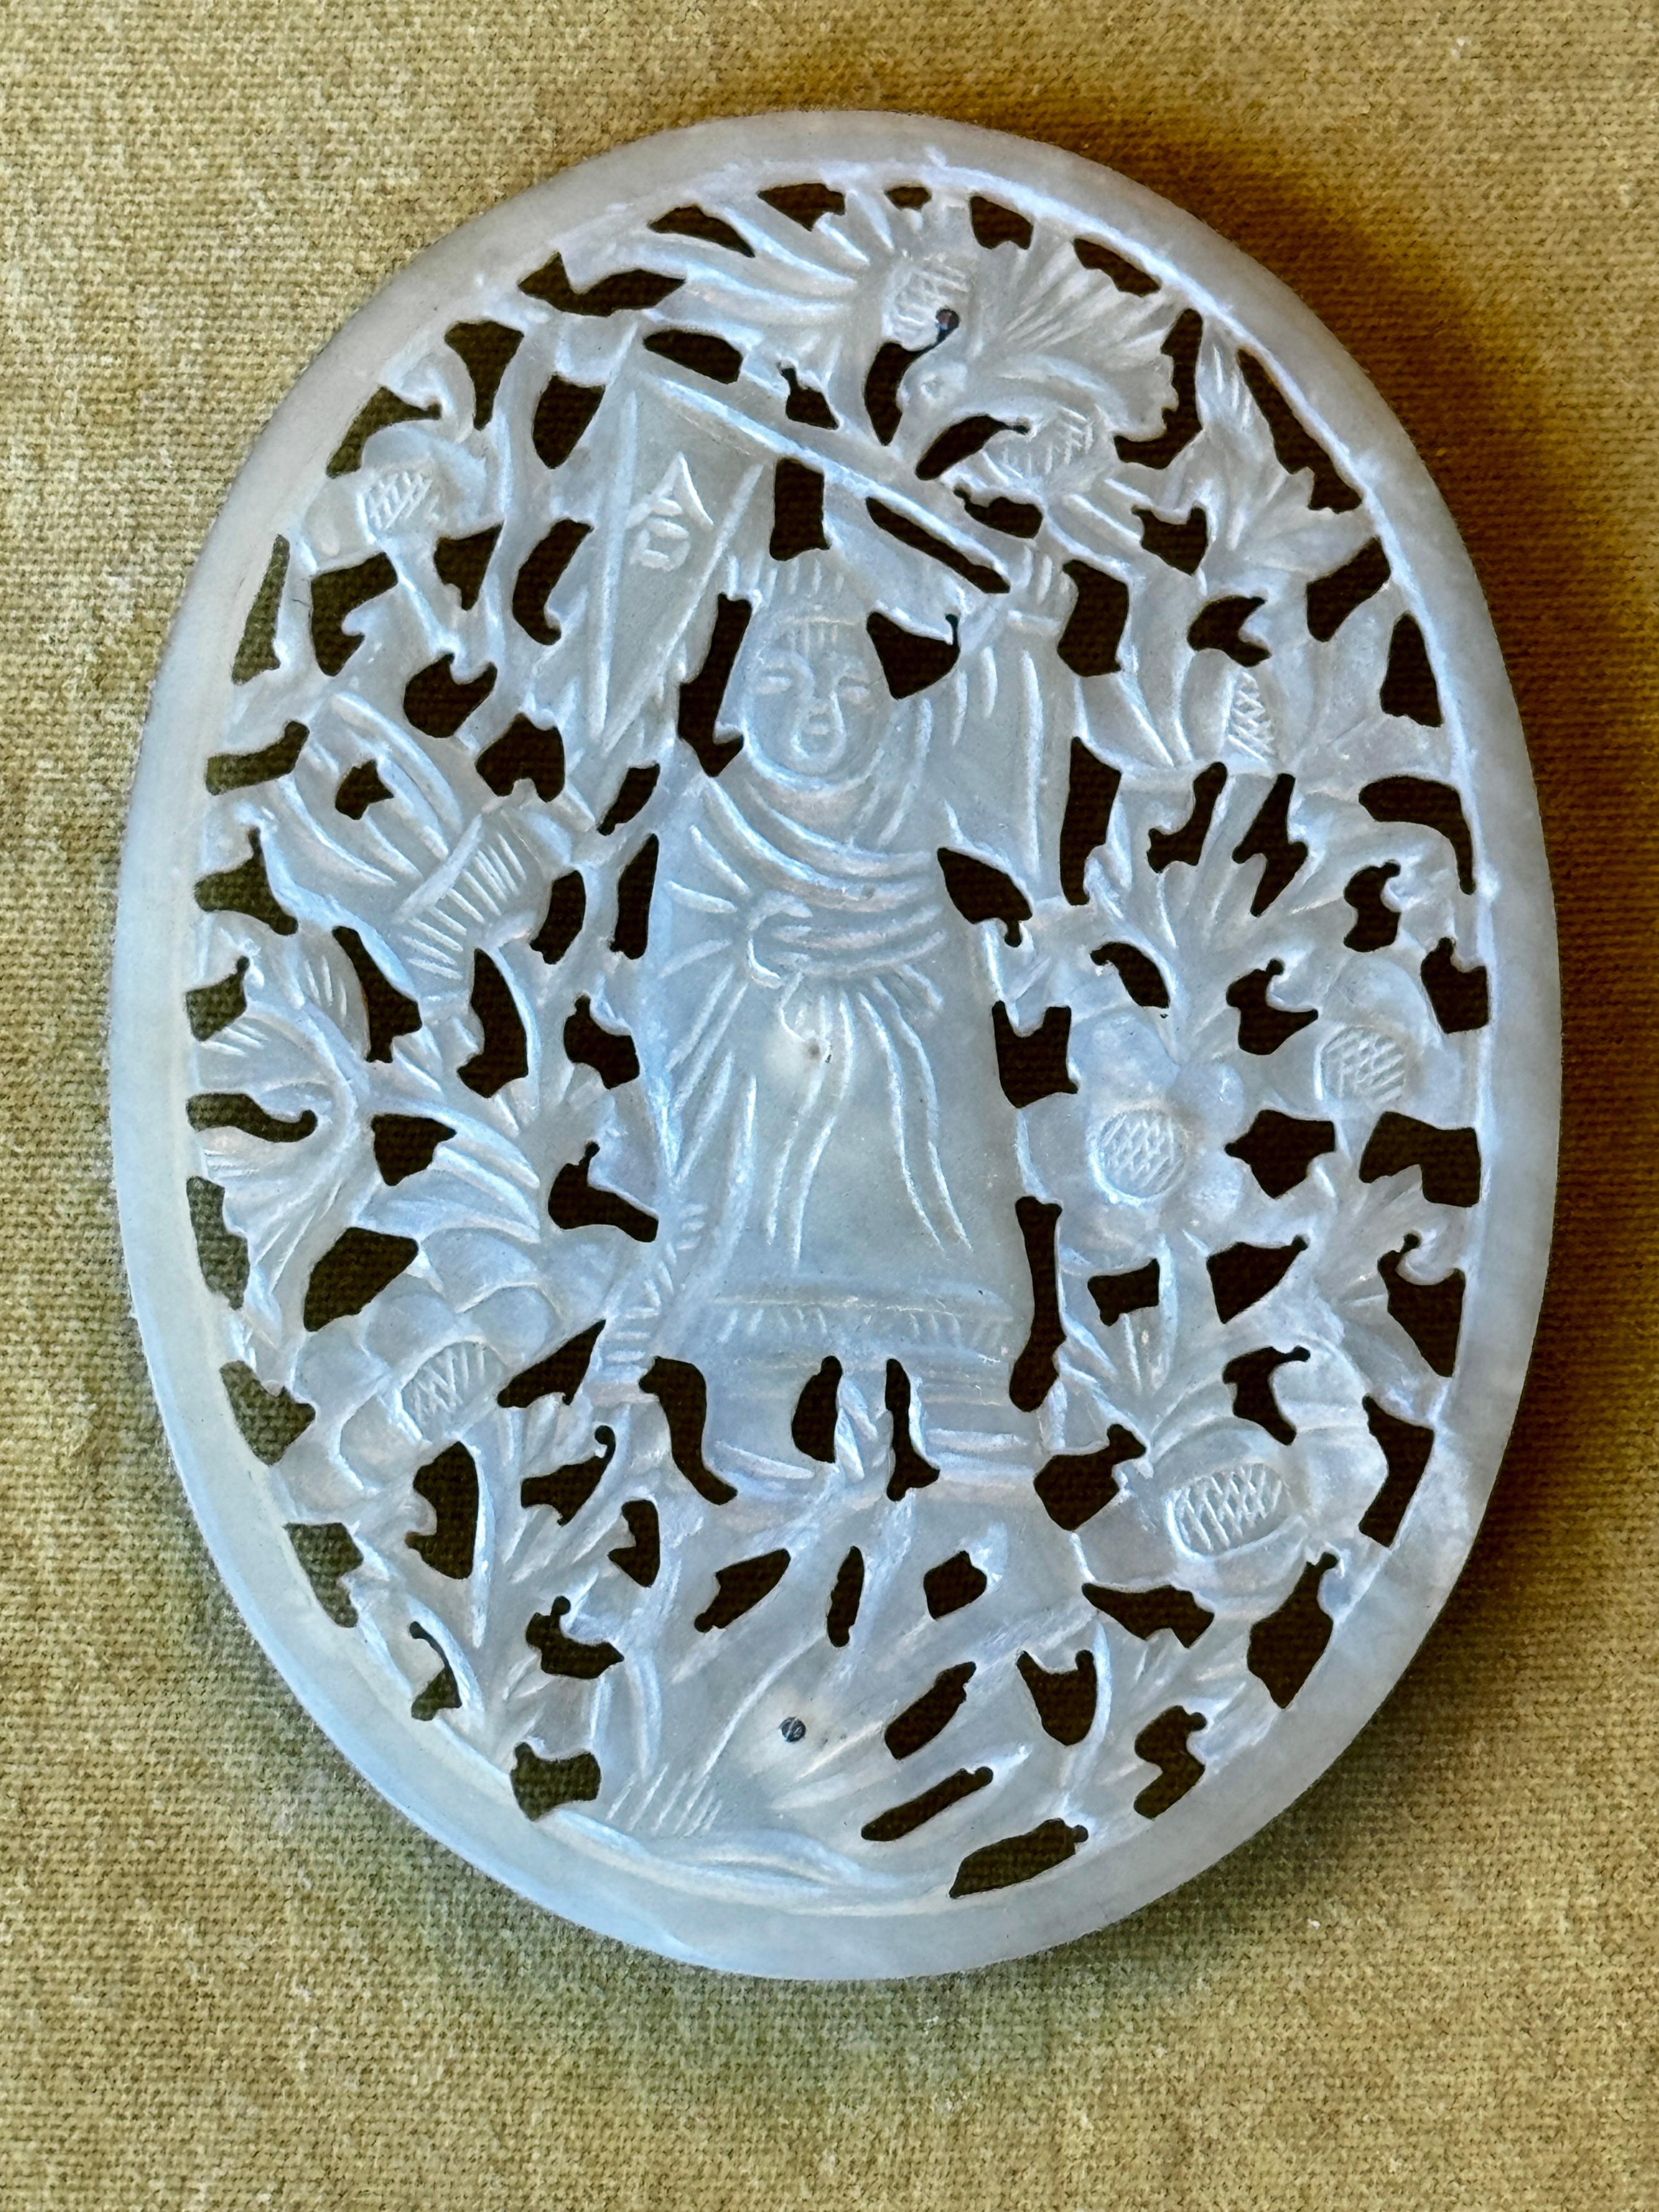 Large Oval Carved Jade Plaque Framed with Asian Figural decoration

Framed 13.5